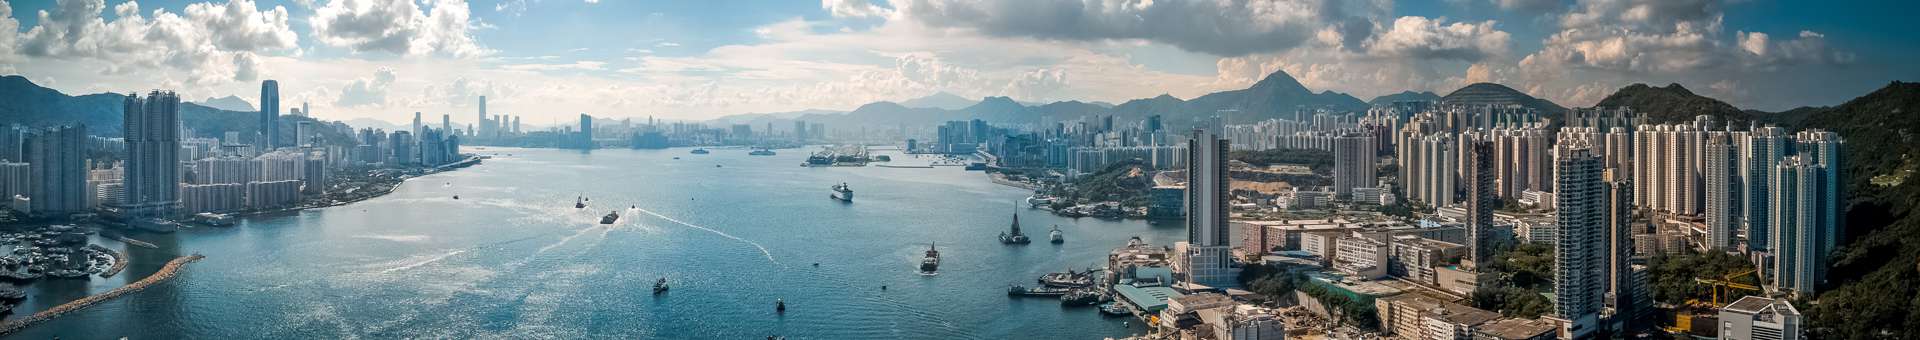 Rechercher des informations WHOIS sur les noms de domaine à Hong Kong